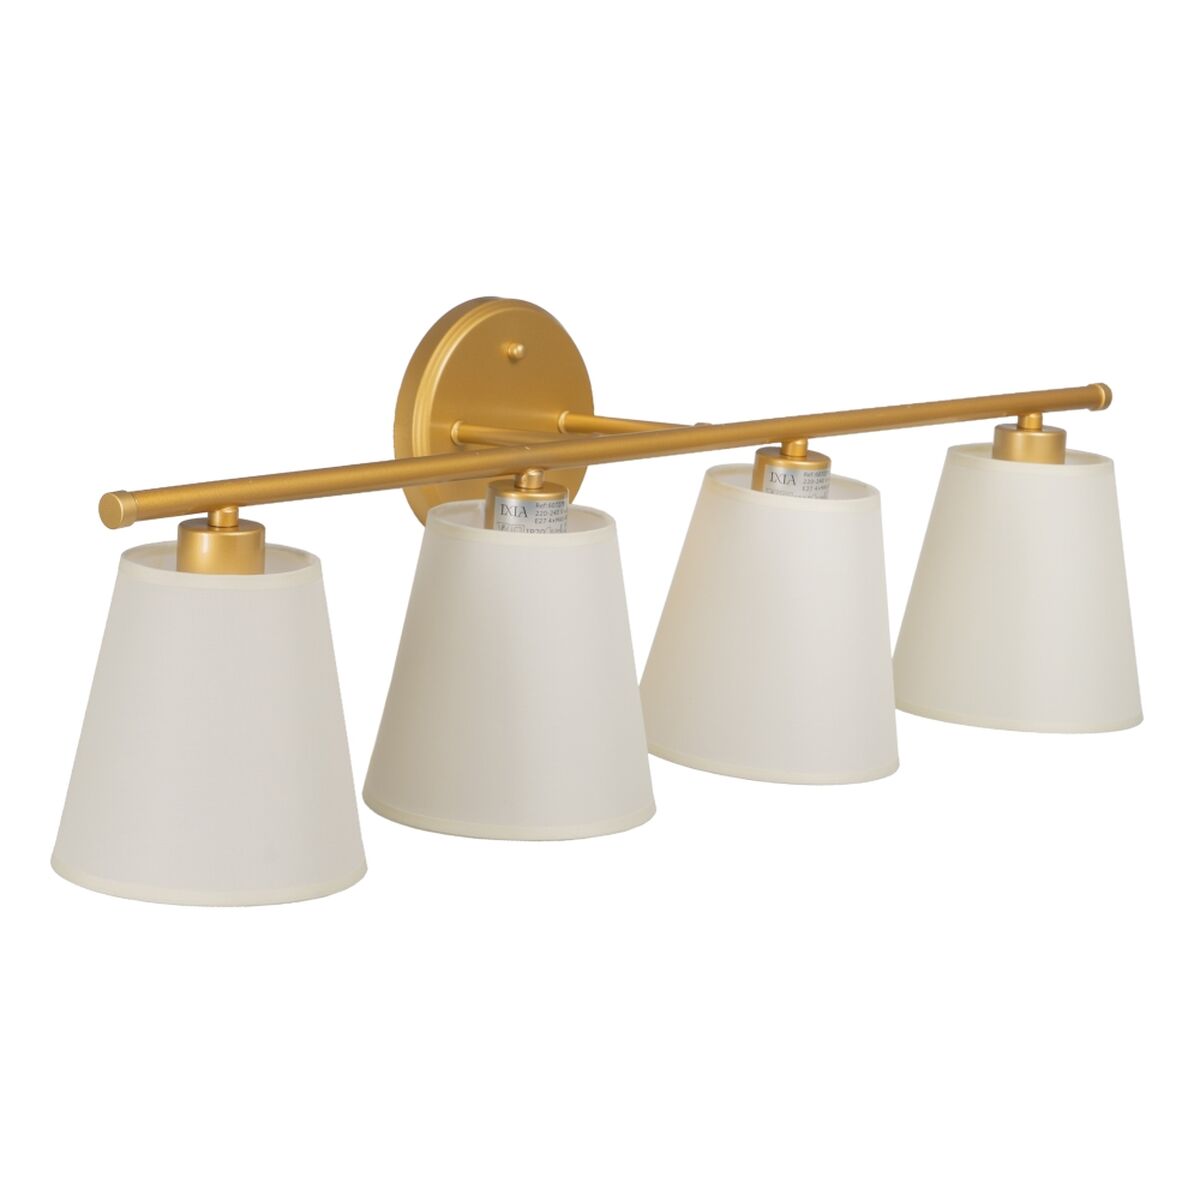 Wall Lamp 82 x 20 x 25 cm Golden Metal Modern